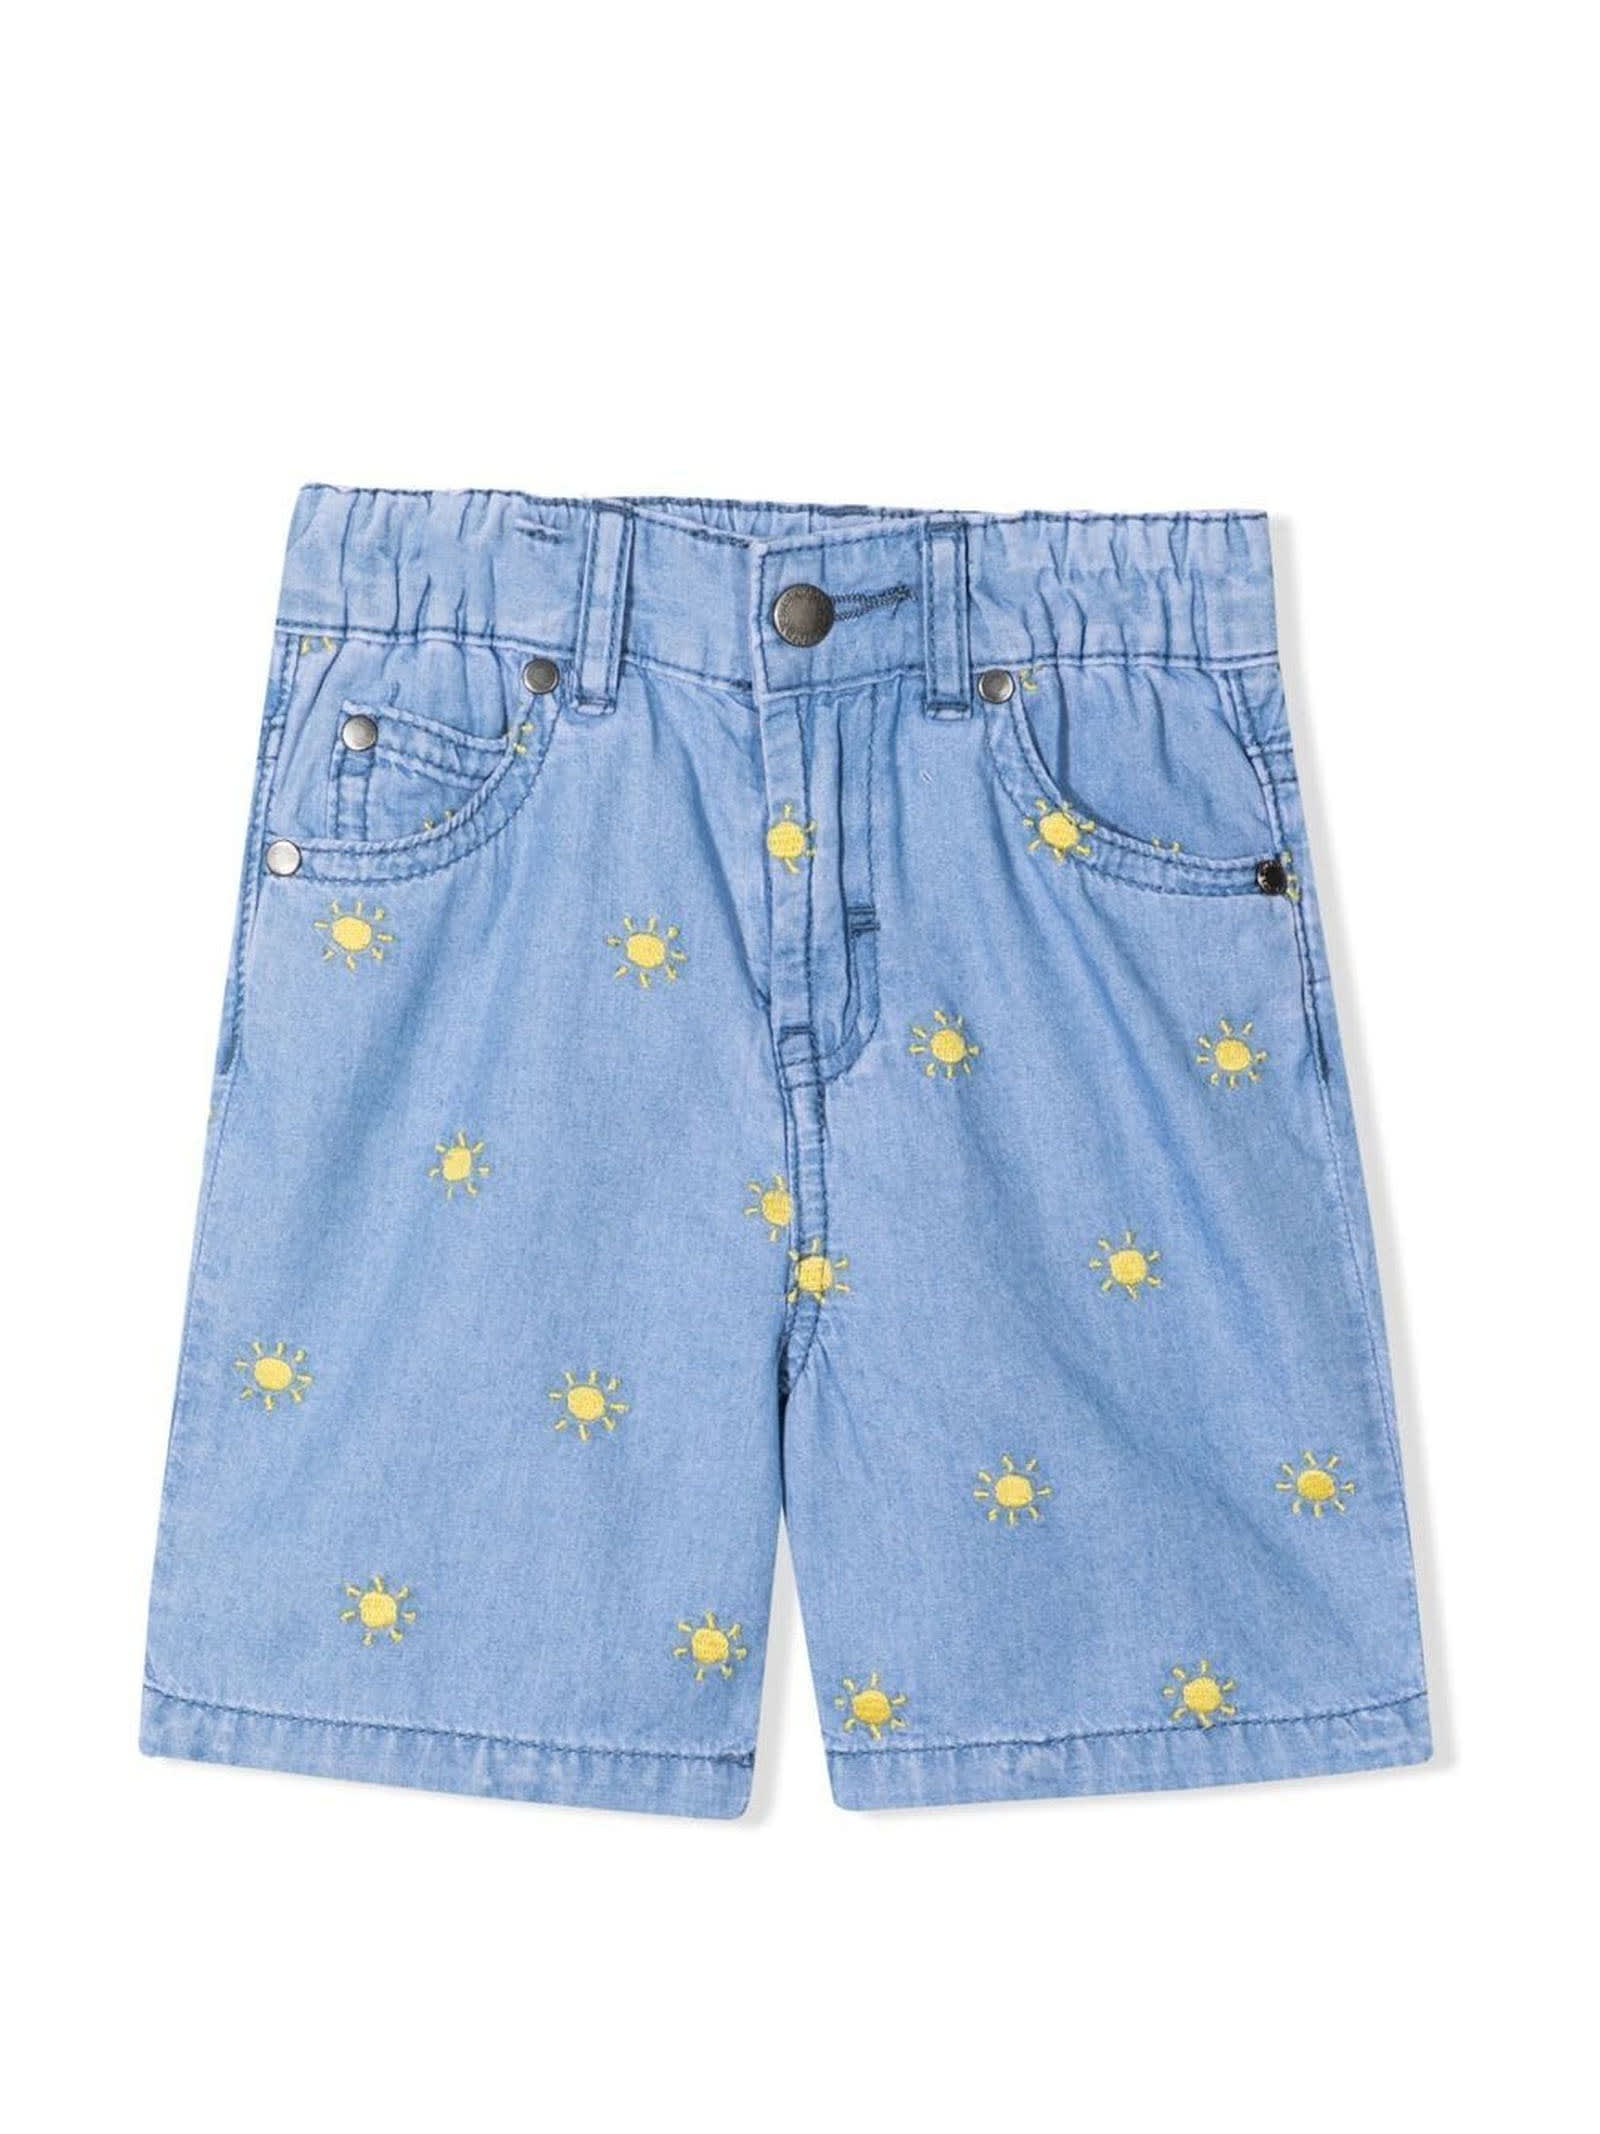 Stella McCartney Kids Light Blu Cotton Shorts